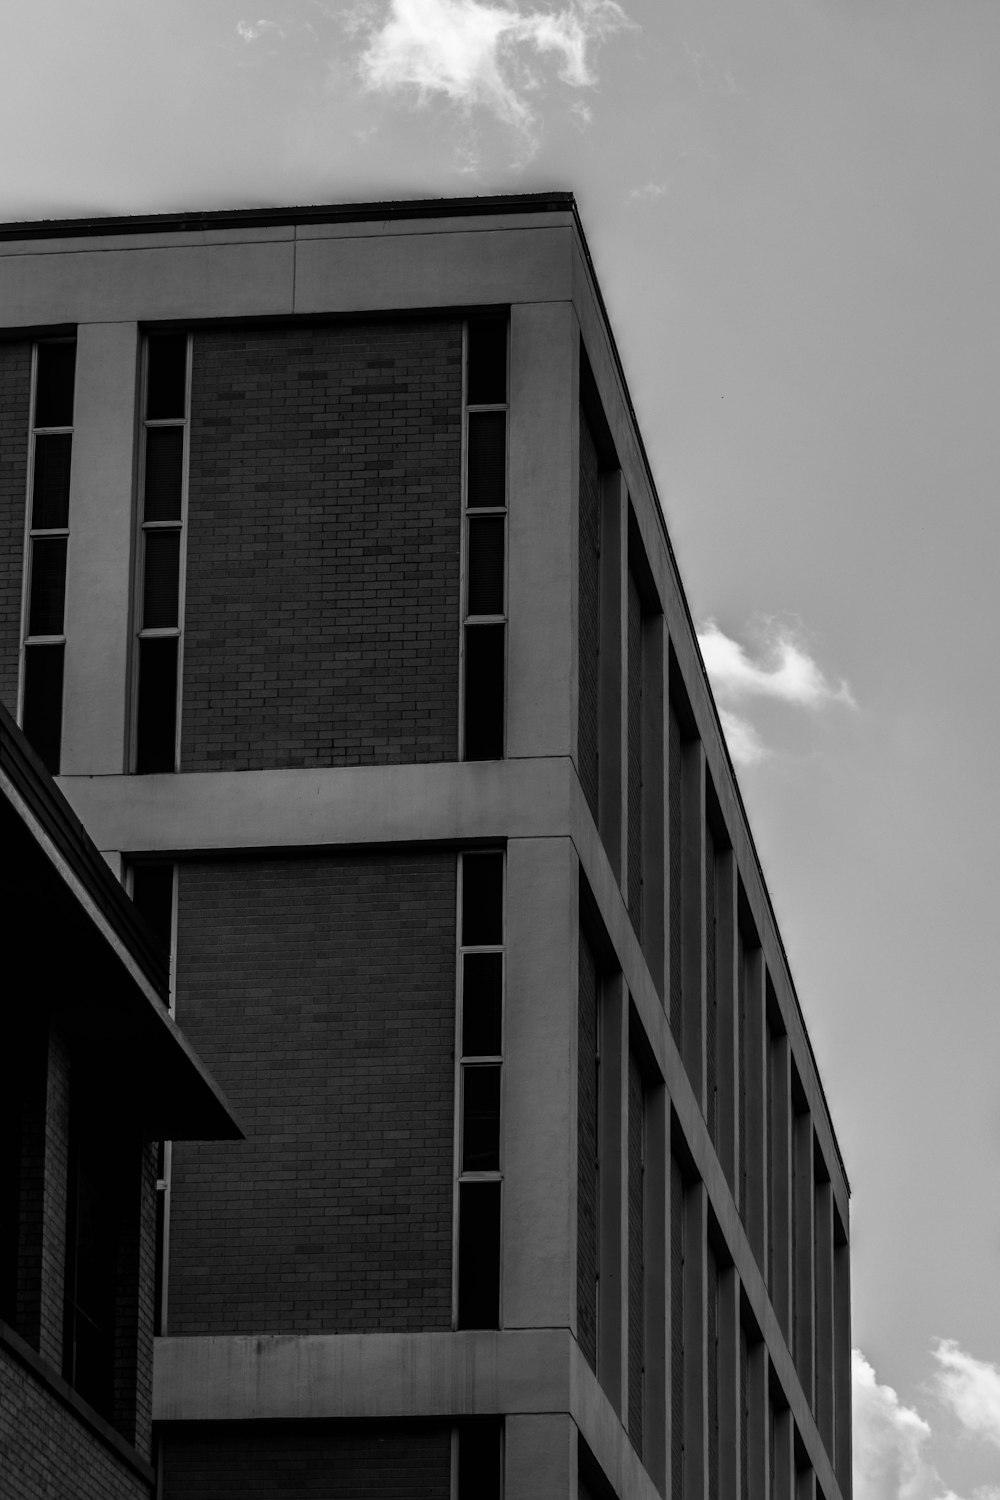 曇り空の下の建物のグレースケール写真